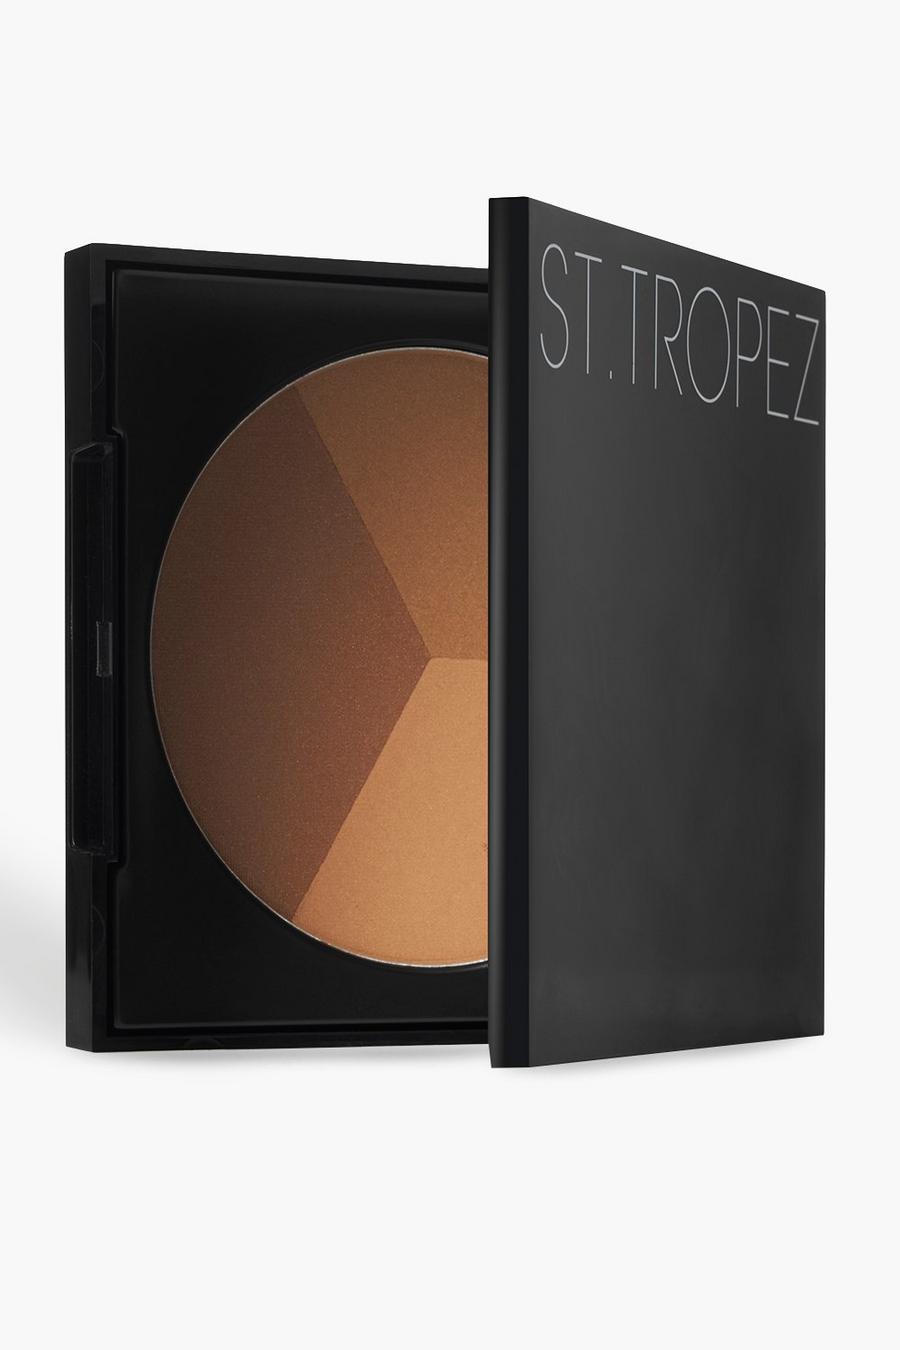 St. Tropez - Poudre bronzante 3 en 1 - 22g, Multi image number 1